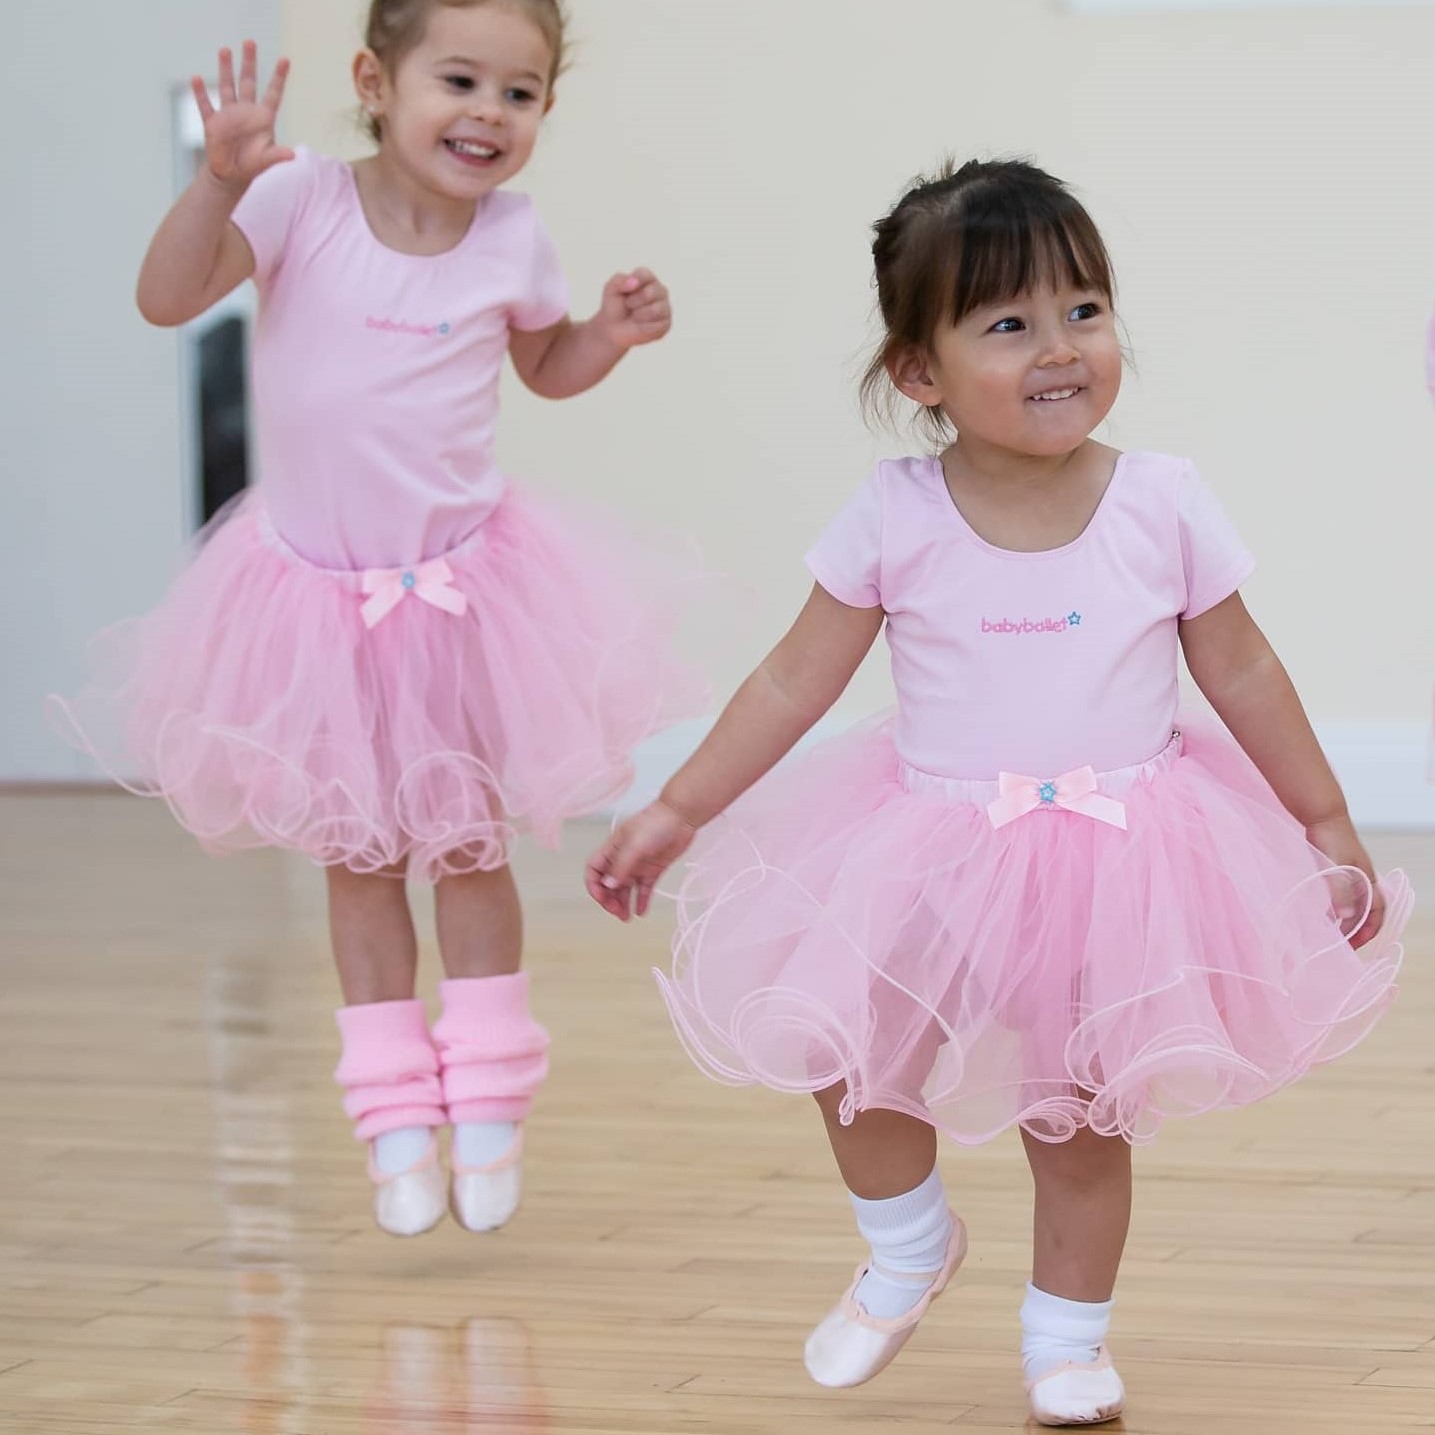 Baby Ballet dance classes